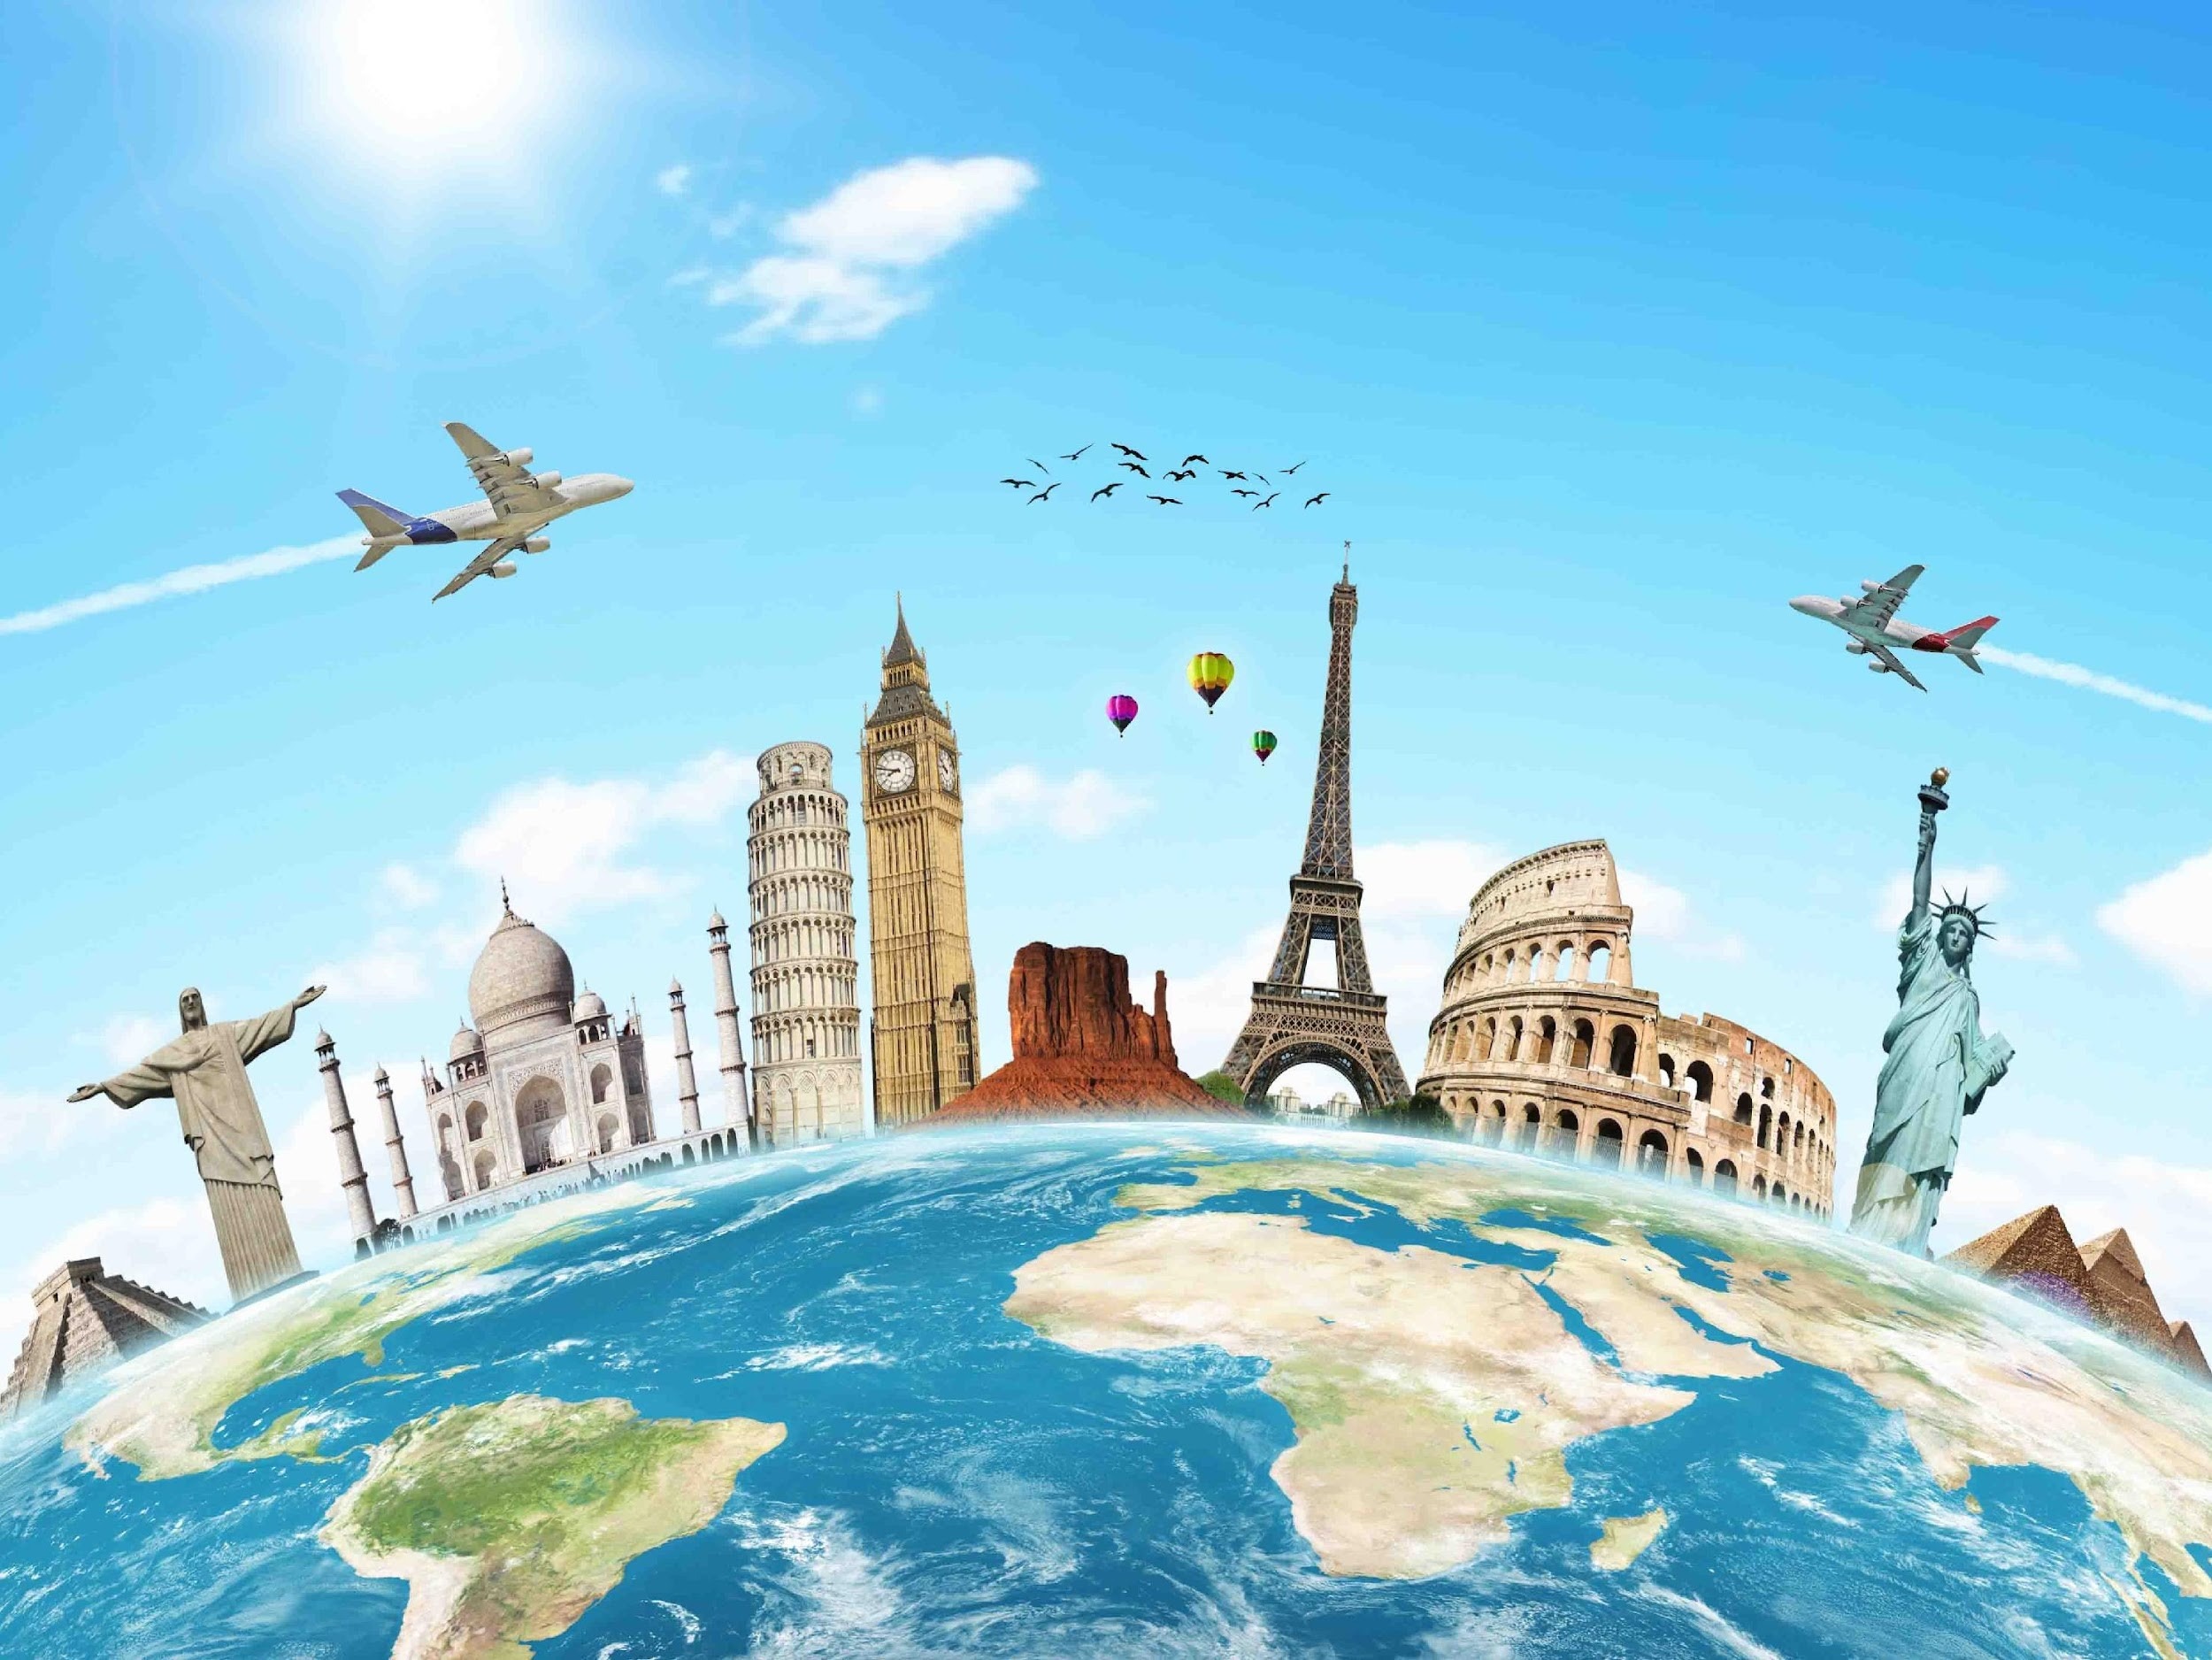 Du lịch nội địa và du lịch quốc tế là các loại hình du lịch được phân theo tiêu chí lãnh thổ hoạt động